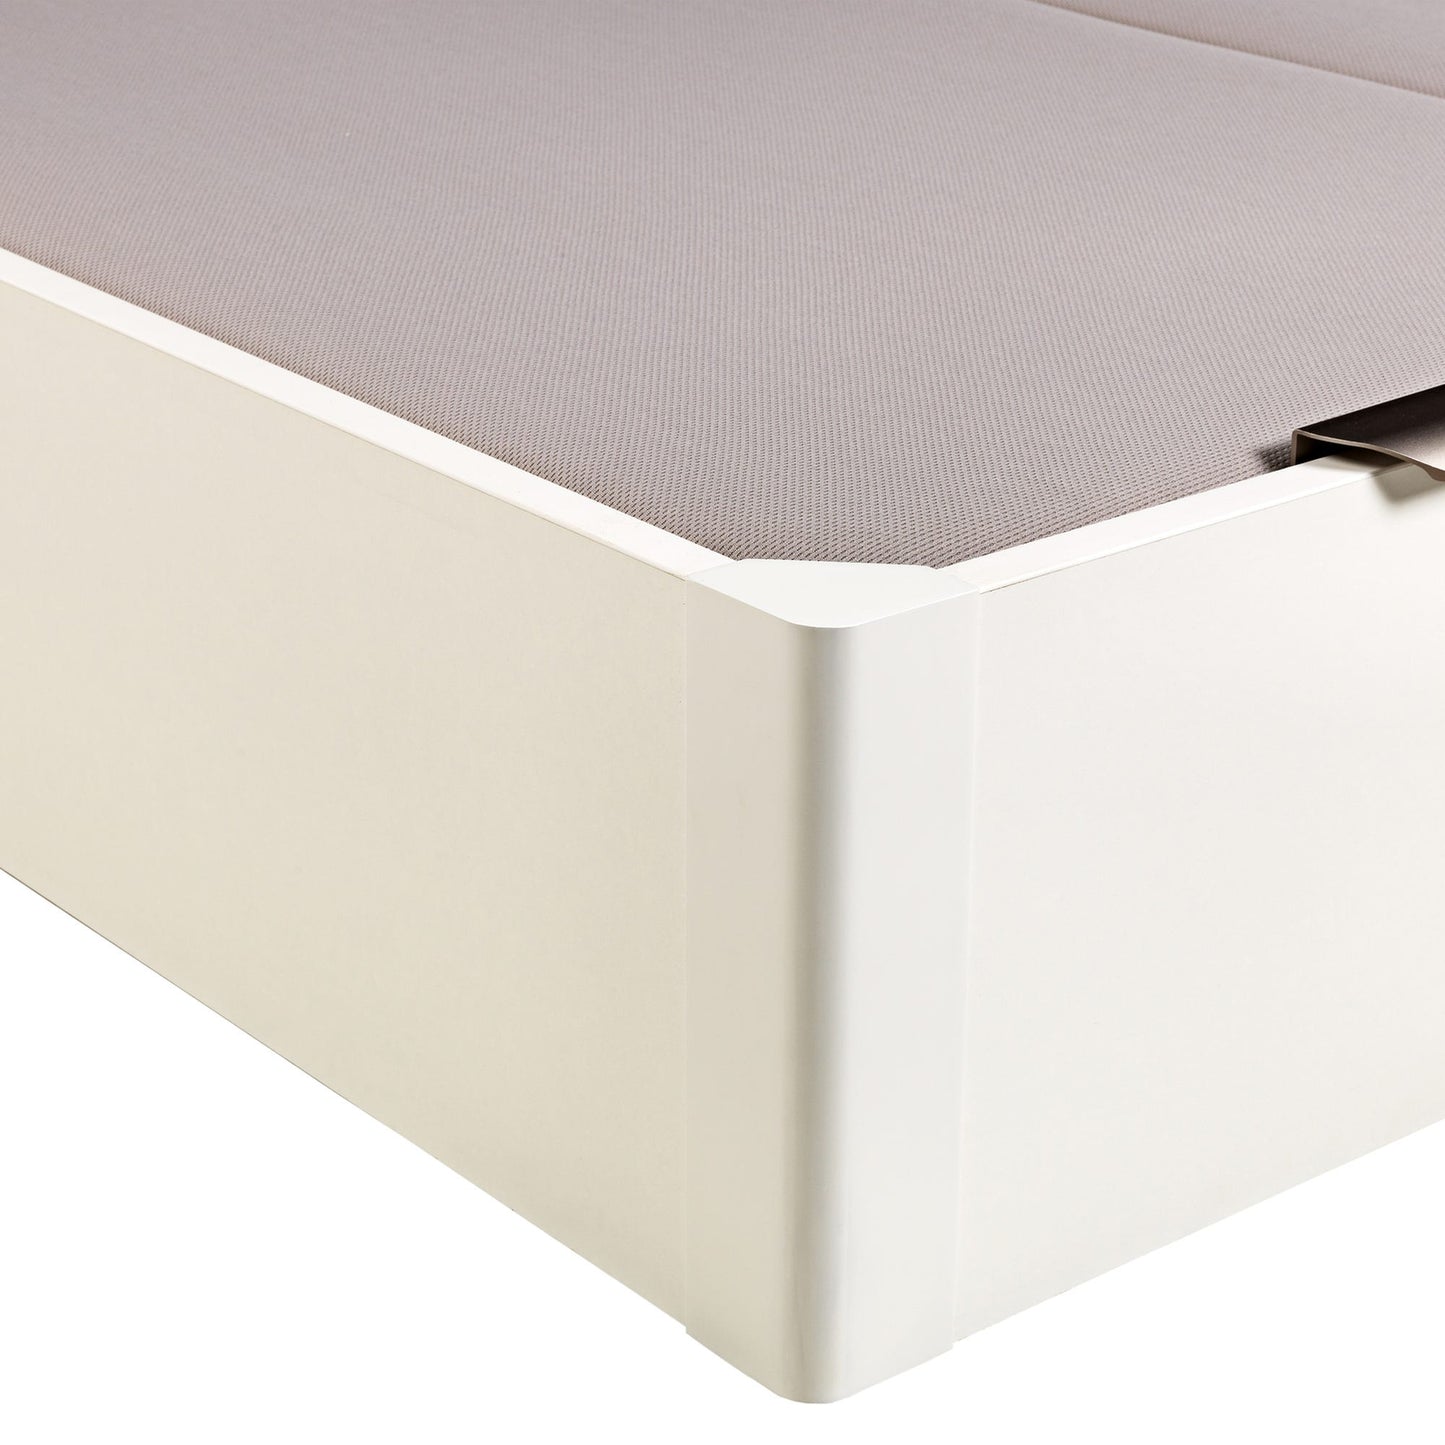 Canapé abatible de madera de tapa doble de color blanco - DESIGN - 180x190